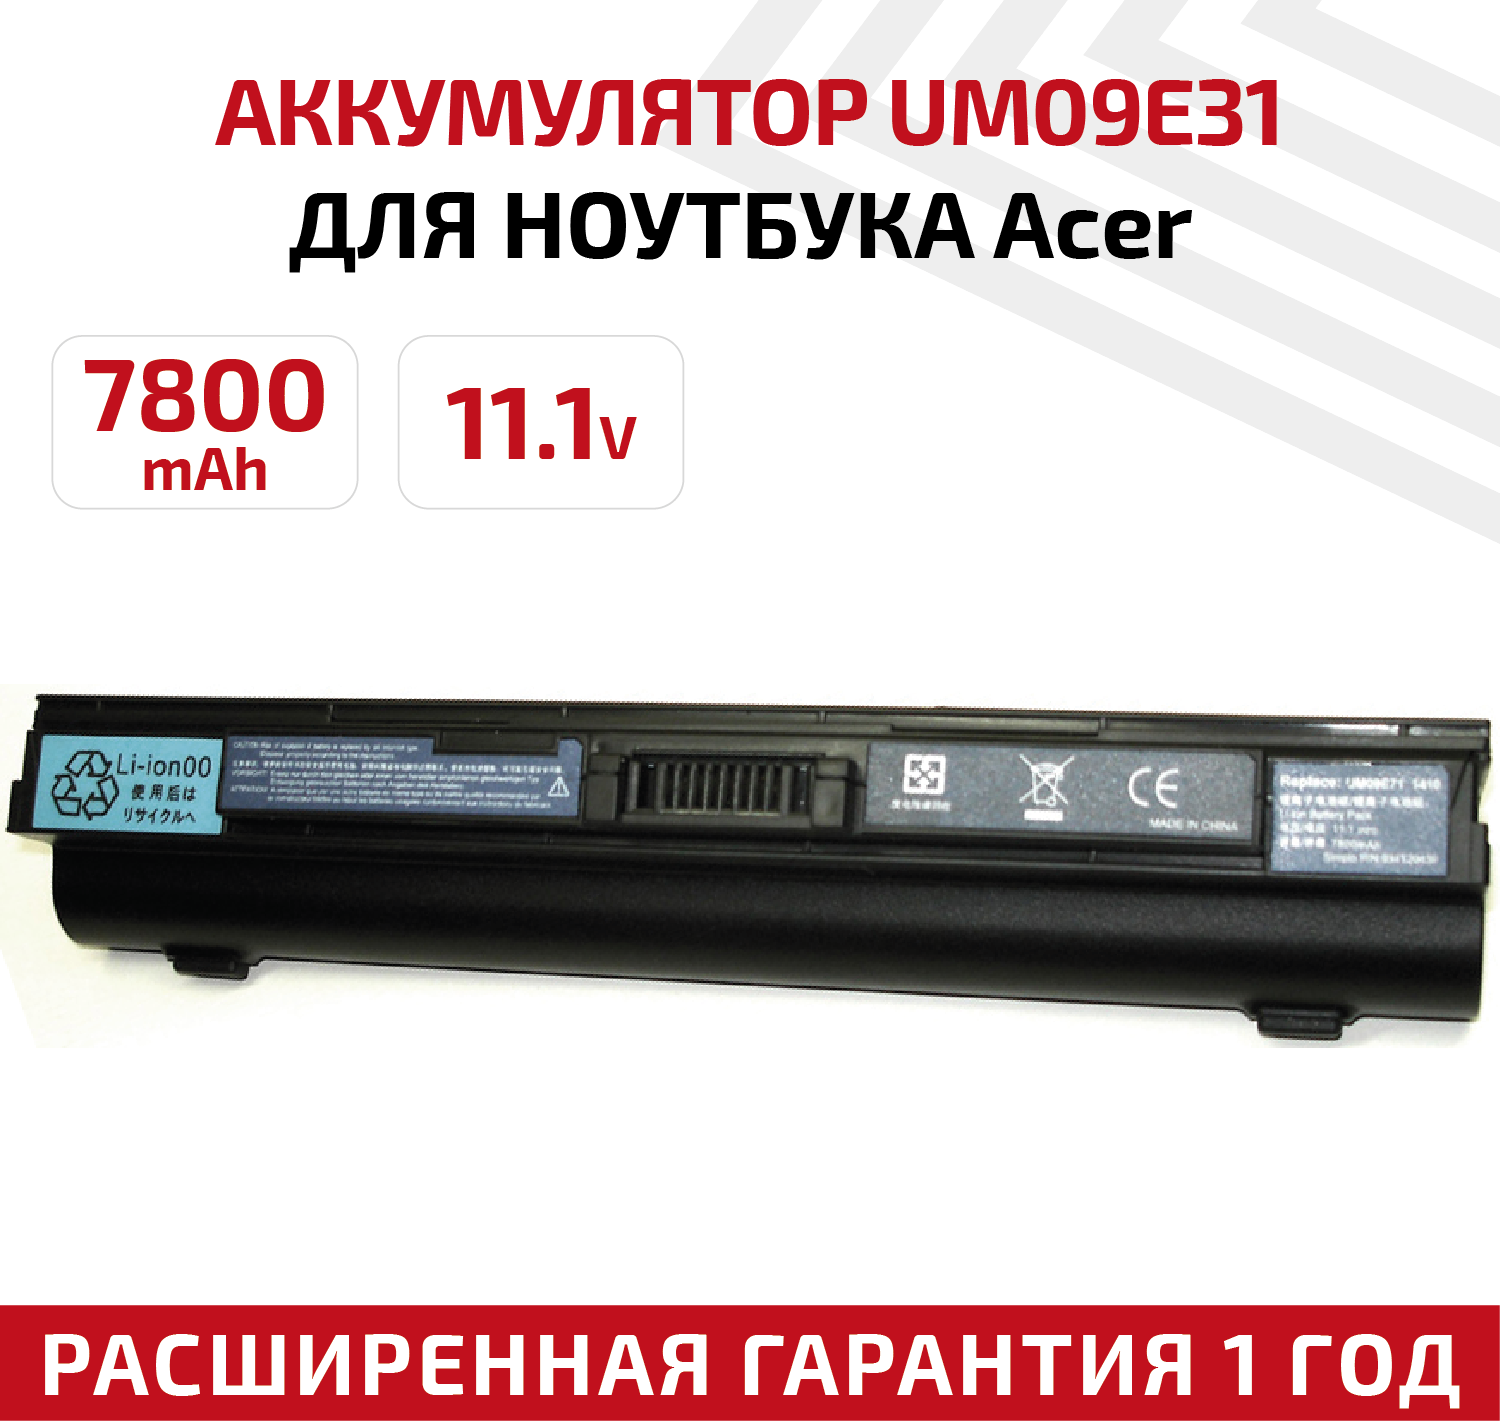 Аккумулятор (АКБ, аккумуляторная батарея) UM09E71 для ноутбука Acer Aspire 1410 1810TZ, 11.1В, 7800мАч, черный